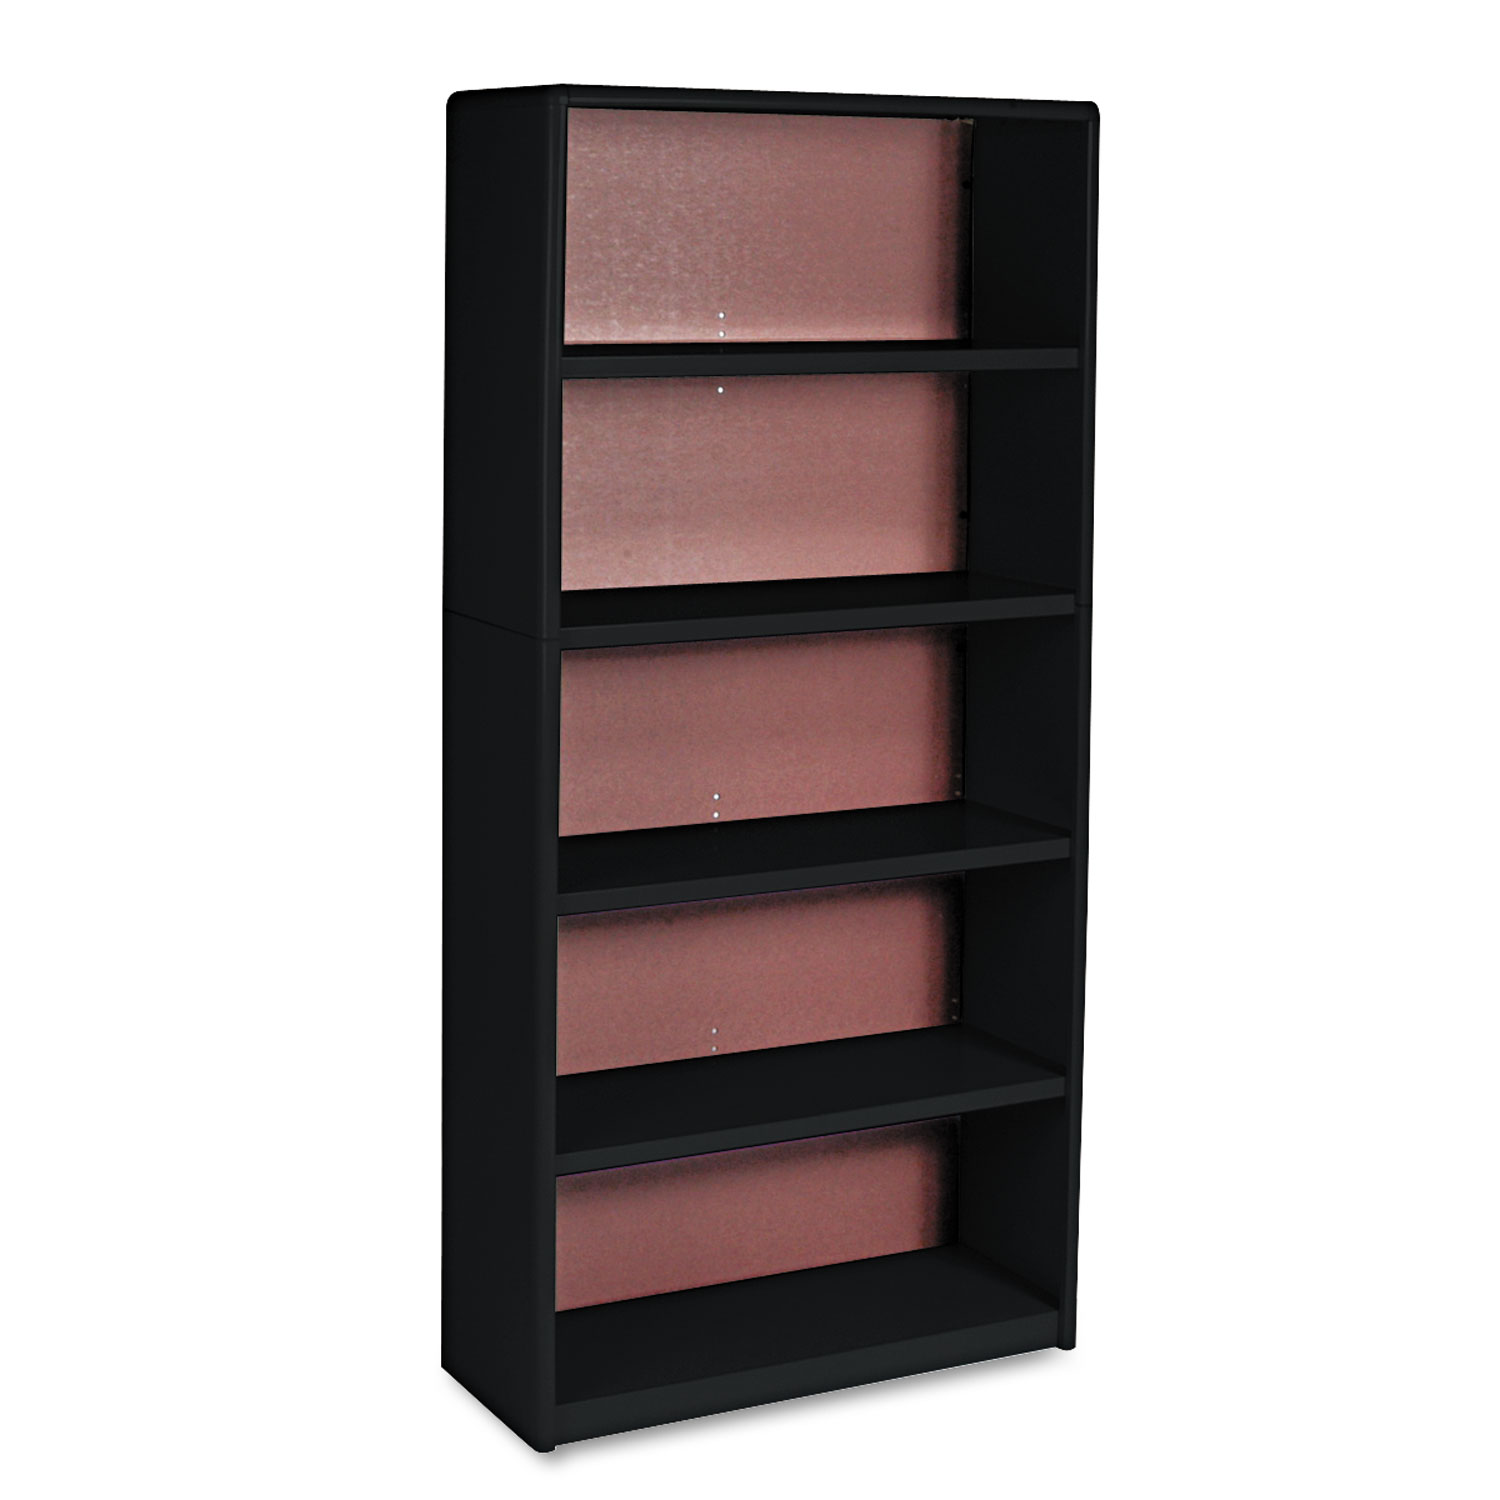 Value Mate Series Metal Bookcase, Five-Shelf, 31-3/4w x 13-1/2d x 67h, Black